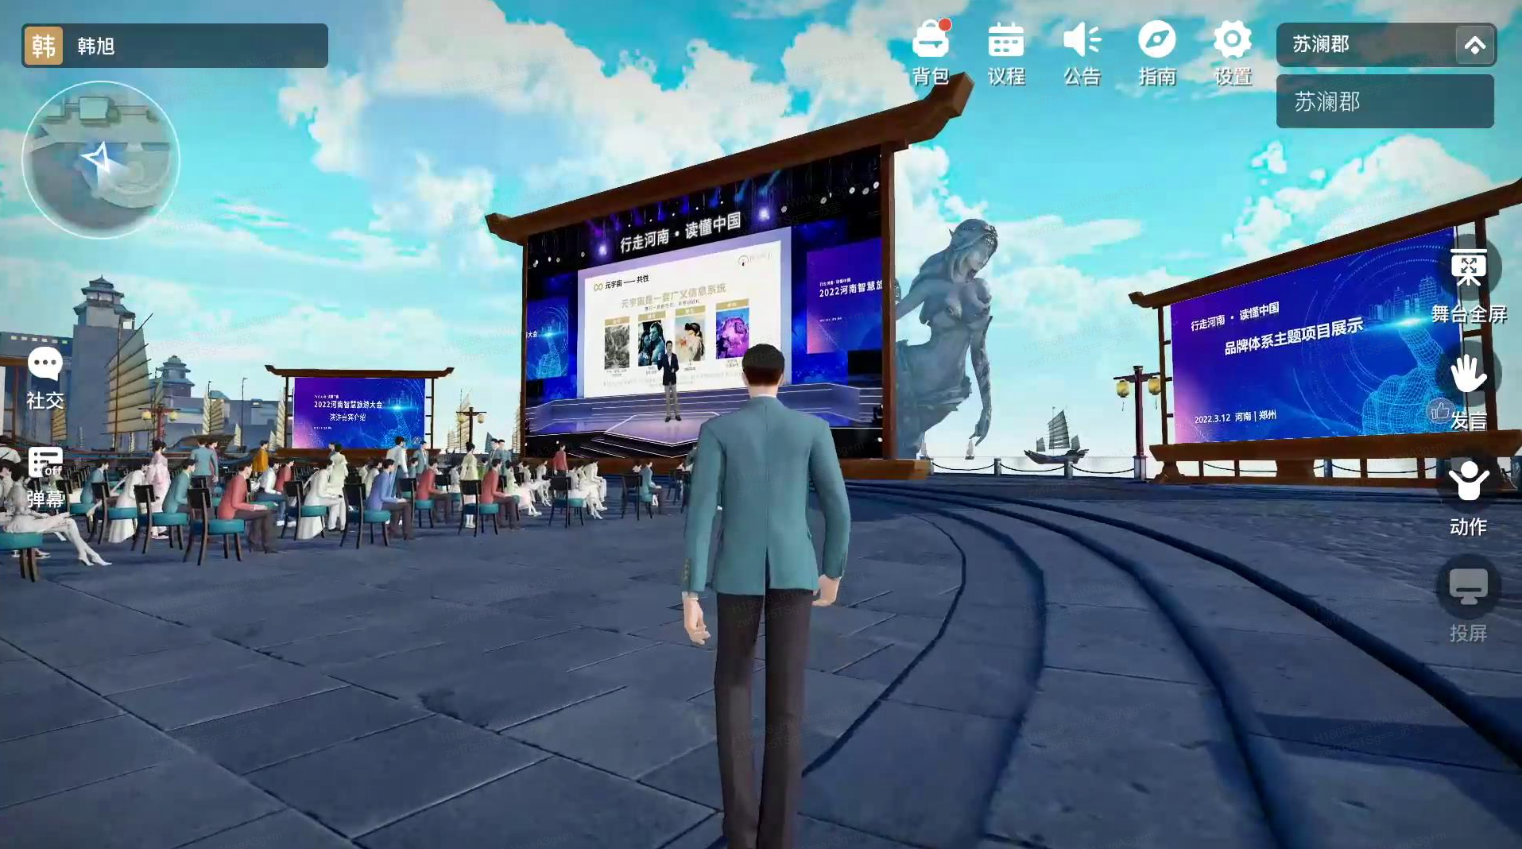 这是一张游戏内截图，展示了一个角色站在舞台前，周围有虚拟观众，舞台上有大屏幕展示活动信息。